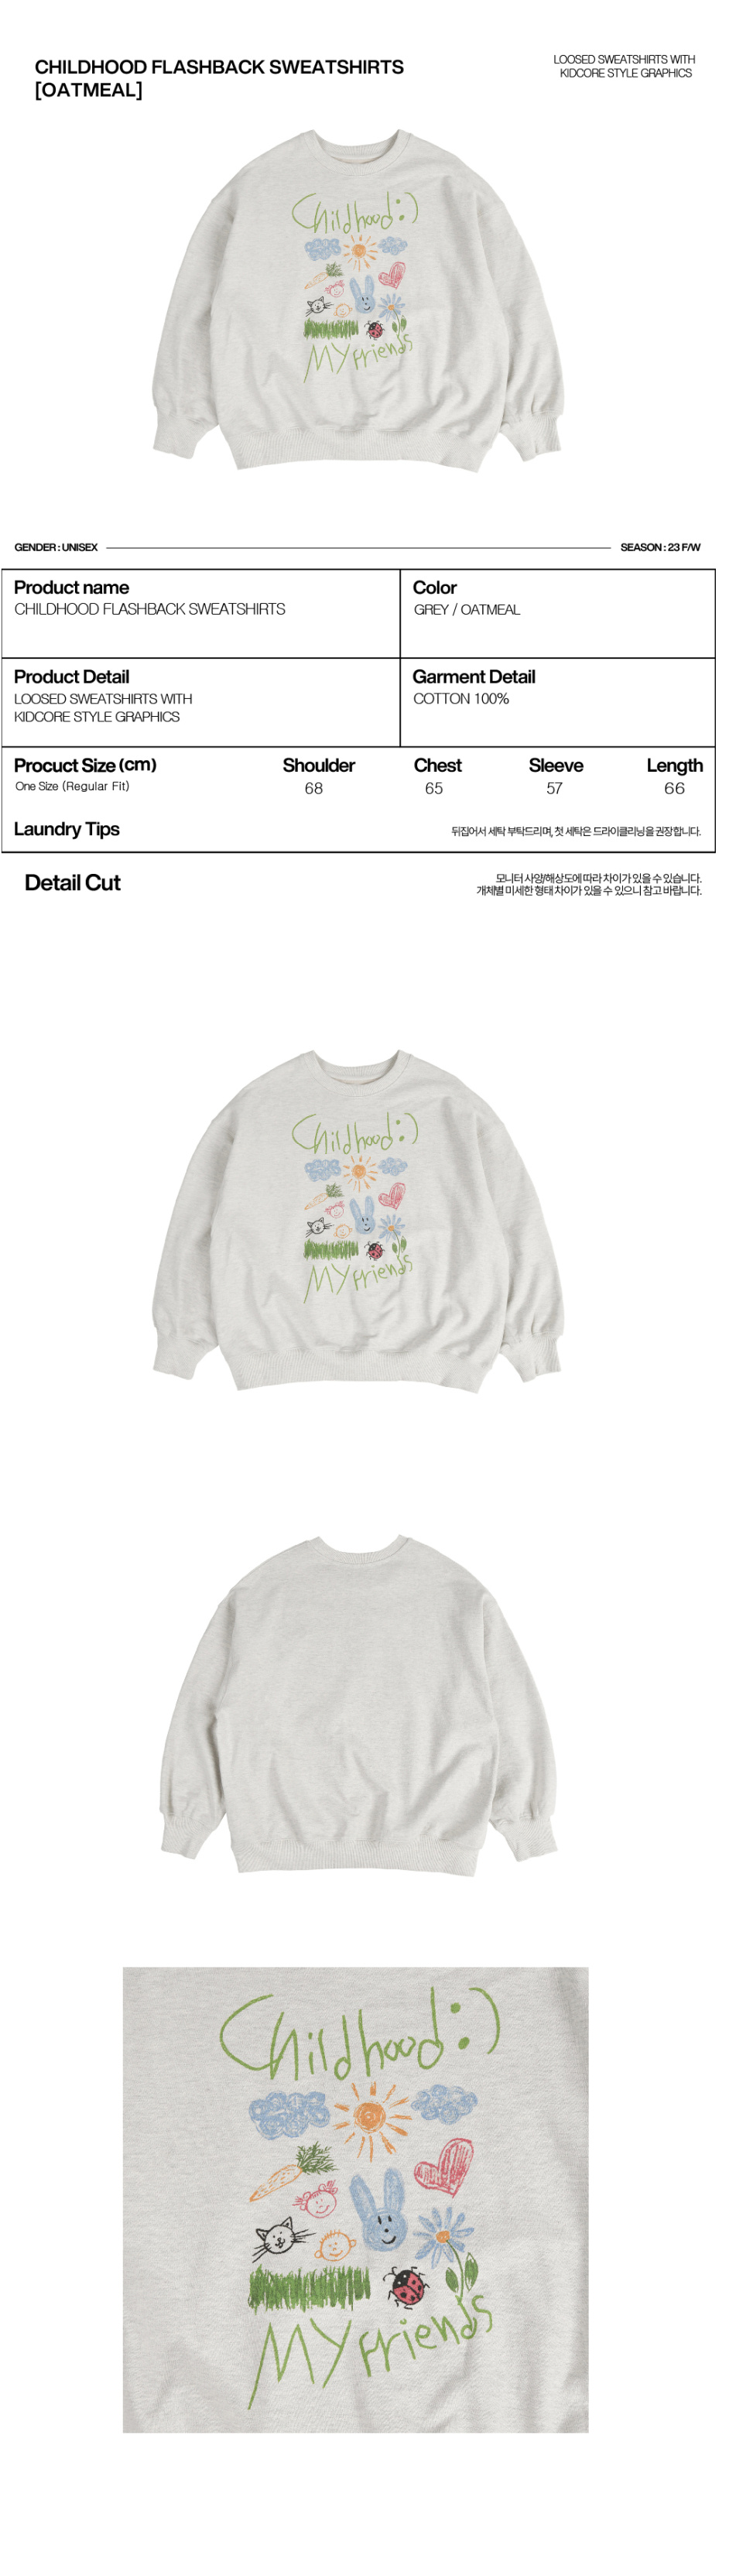 에이이에이이(AEAE) Childhood Flashback Sweatshirts -[OATMEAL]